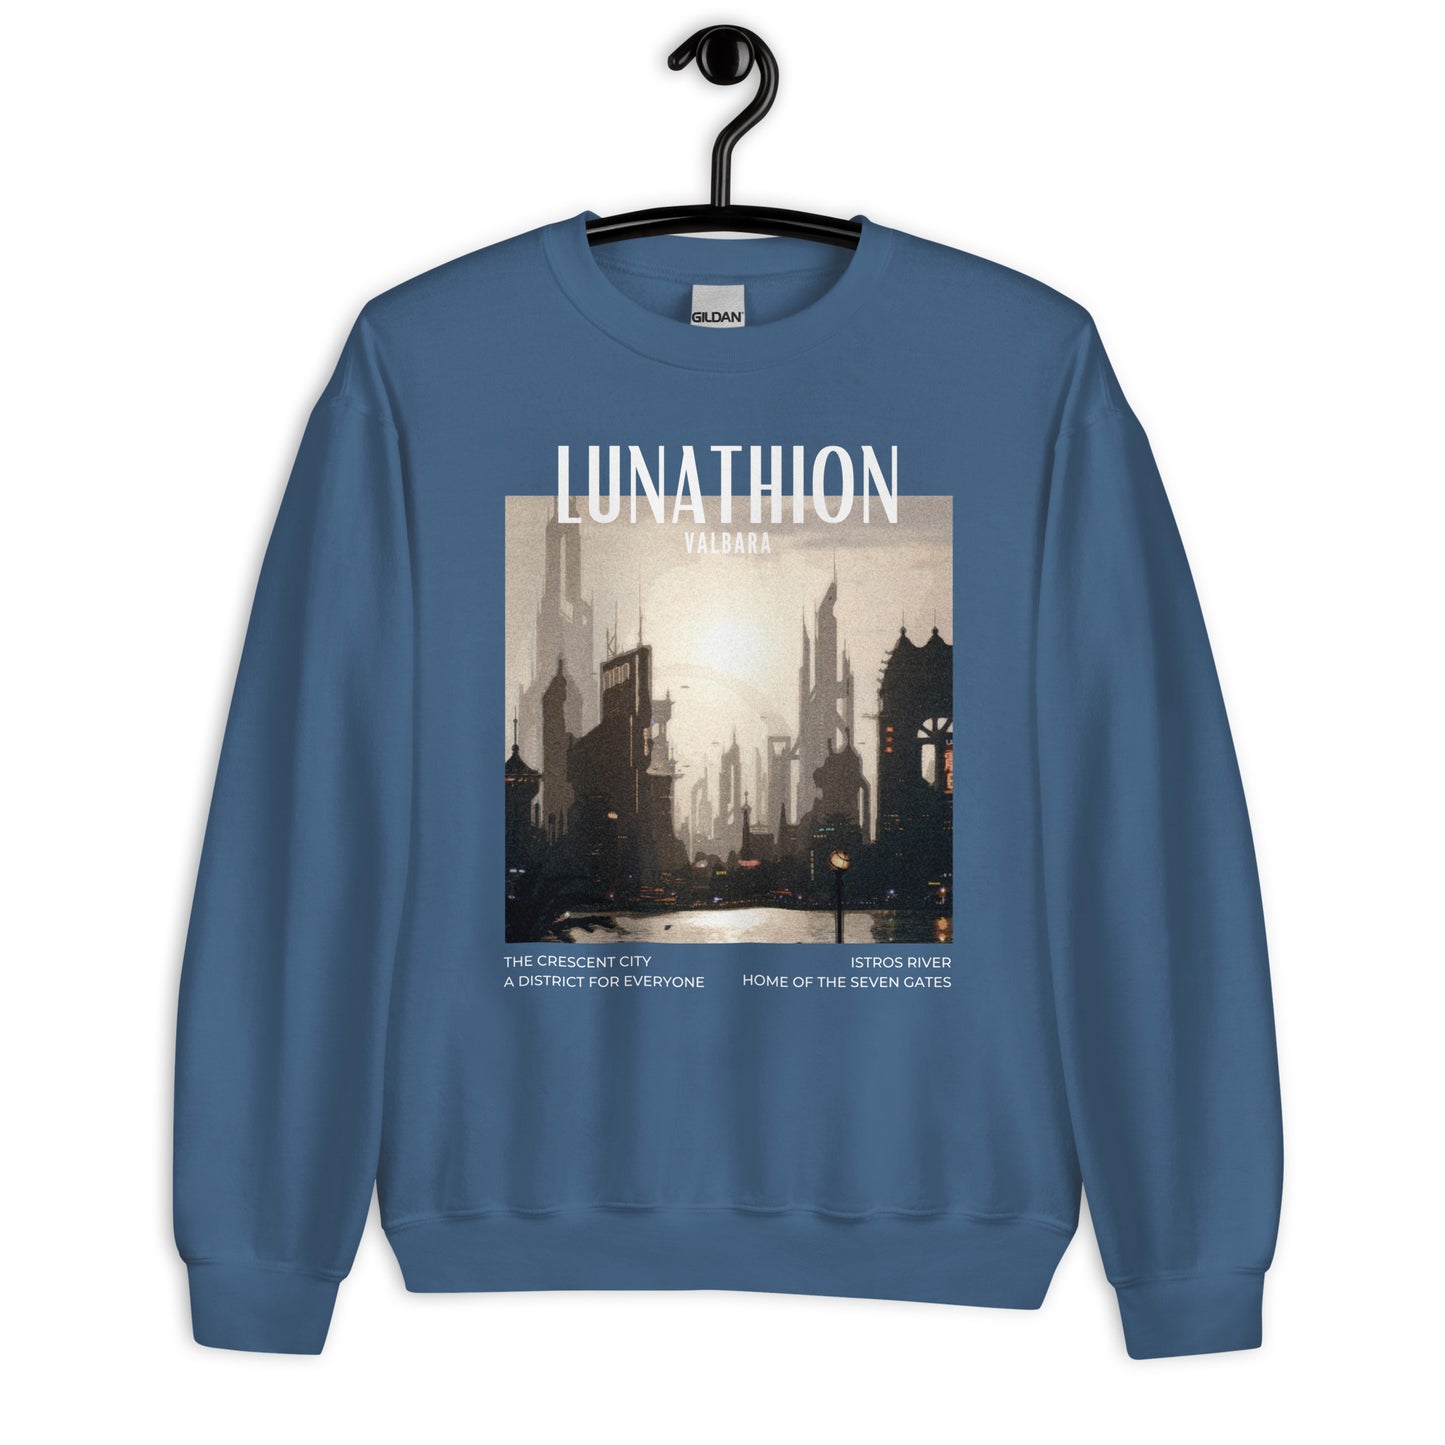 Lunathion Passport Sweater